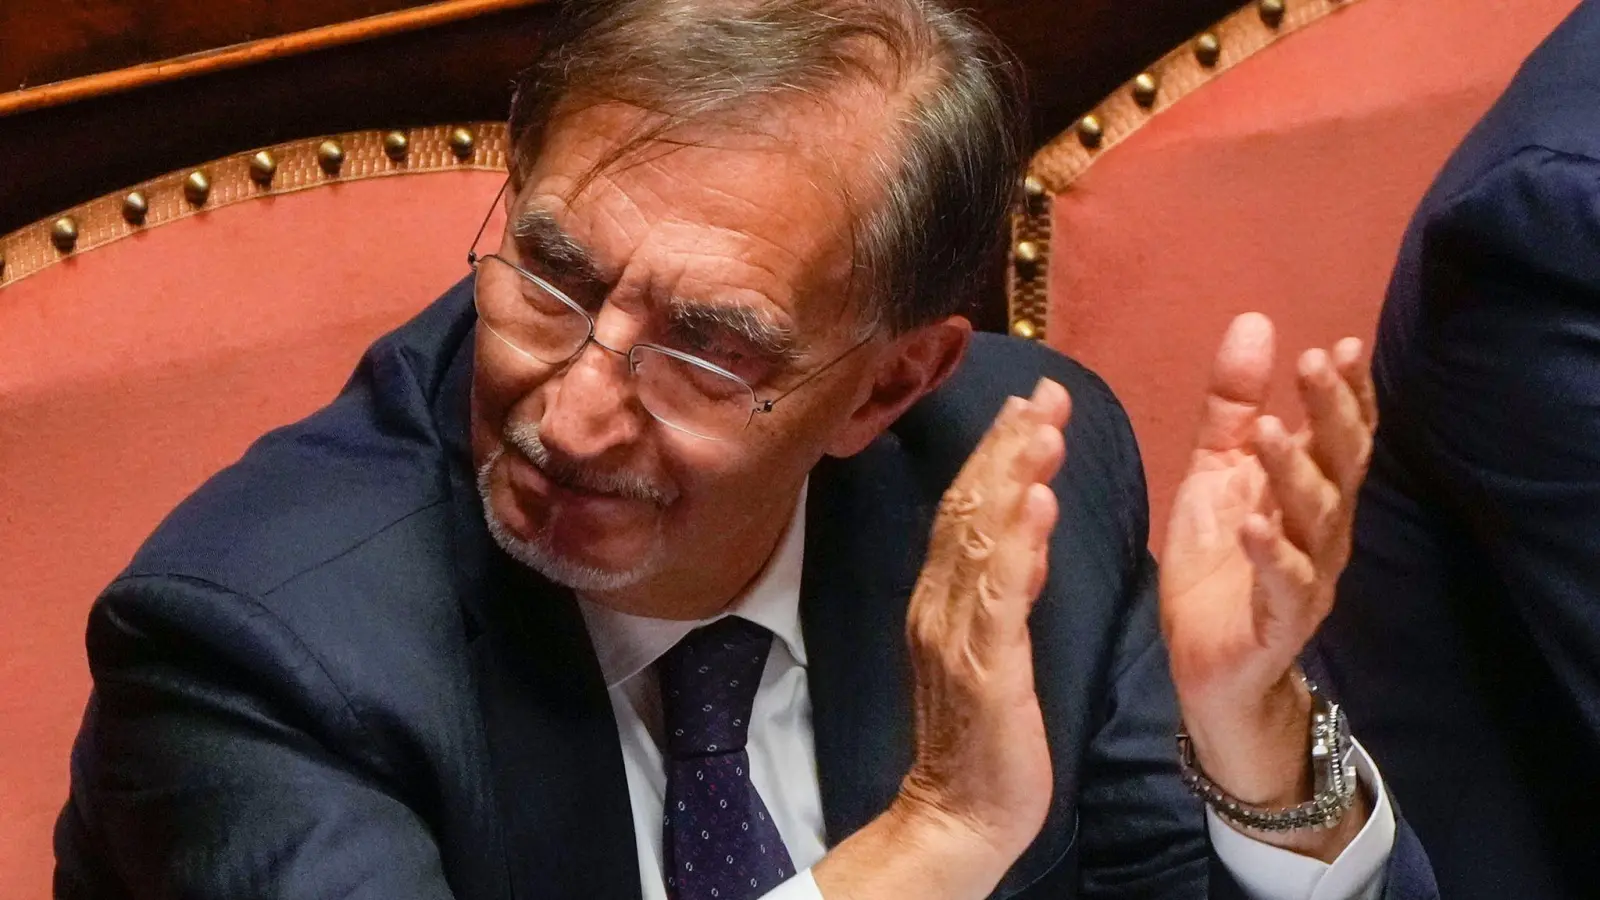 Ignazio La Russa ist bei der konstituierenden Sitzung des neuen italienischen Parlaments zum Vorsitzenden des Senats gewählt worden. (Foto: Gregorio Borgia/AP/dpa)